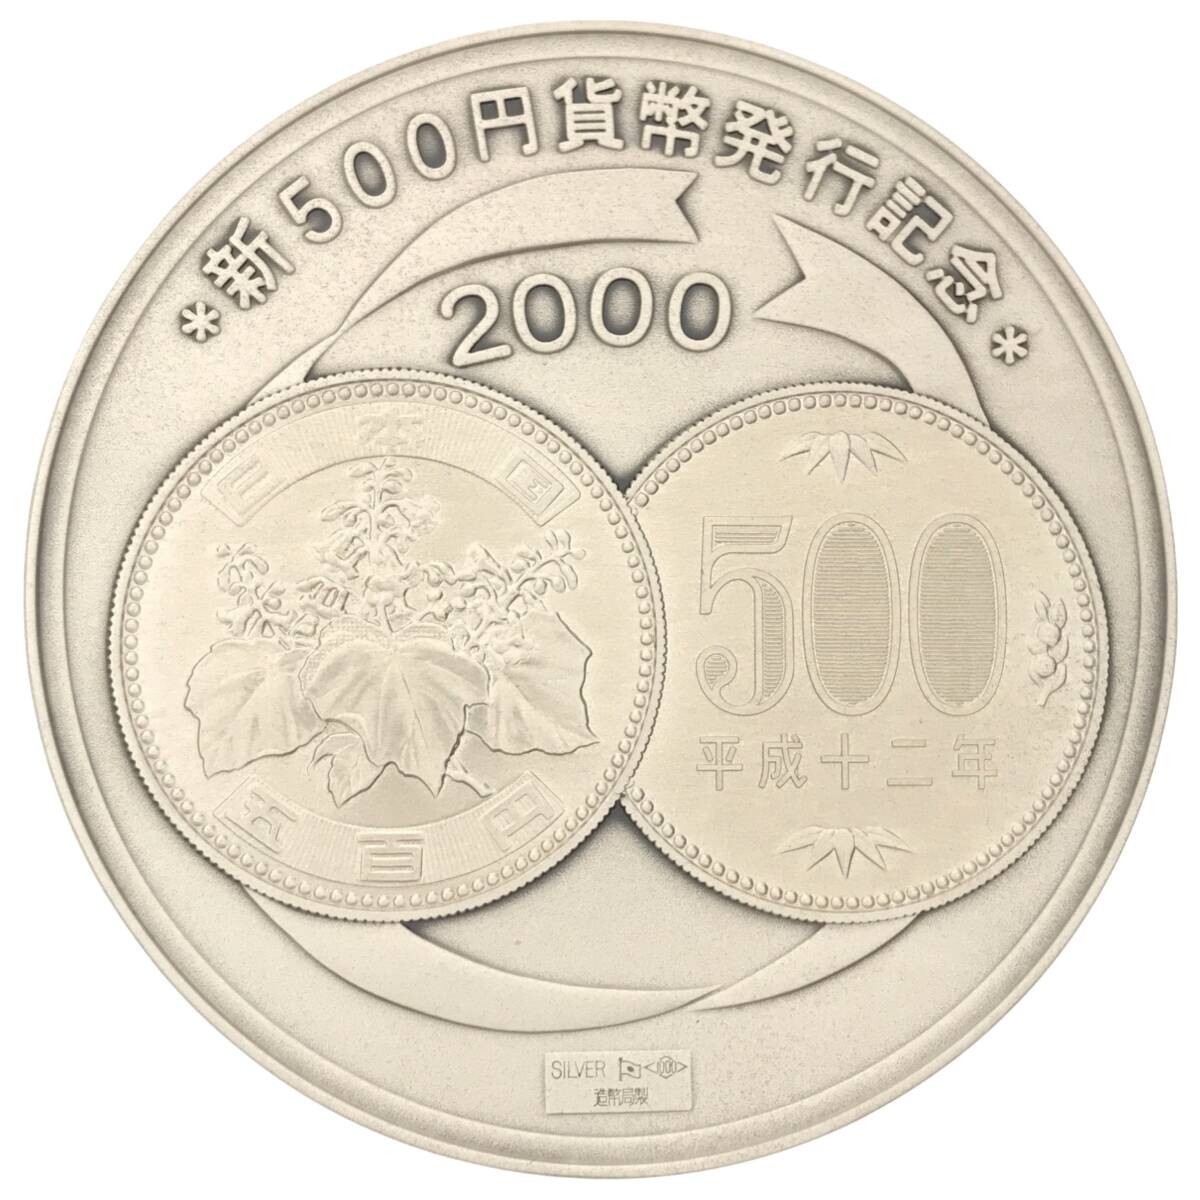 純銀】2000年 新500円貨幣 発行記念メダル SILVER 1000刻印 造幣局製